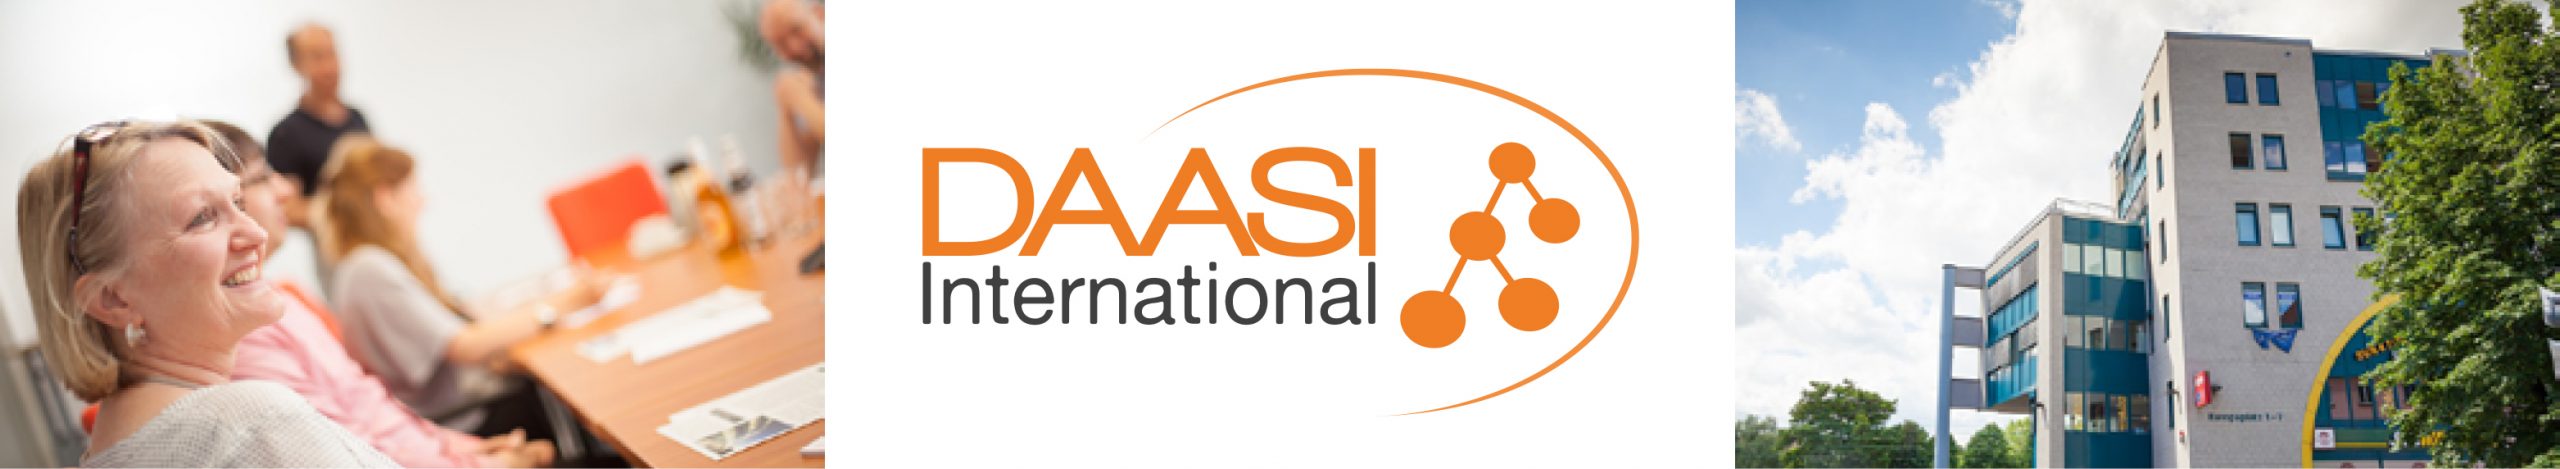 Überschrift DAASI International